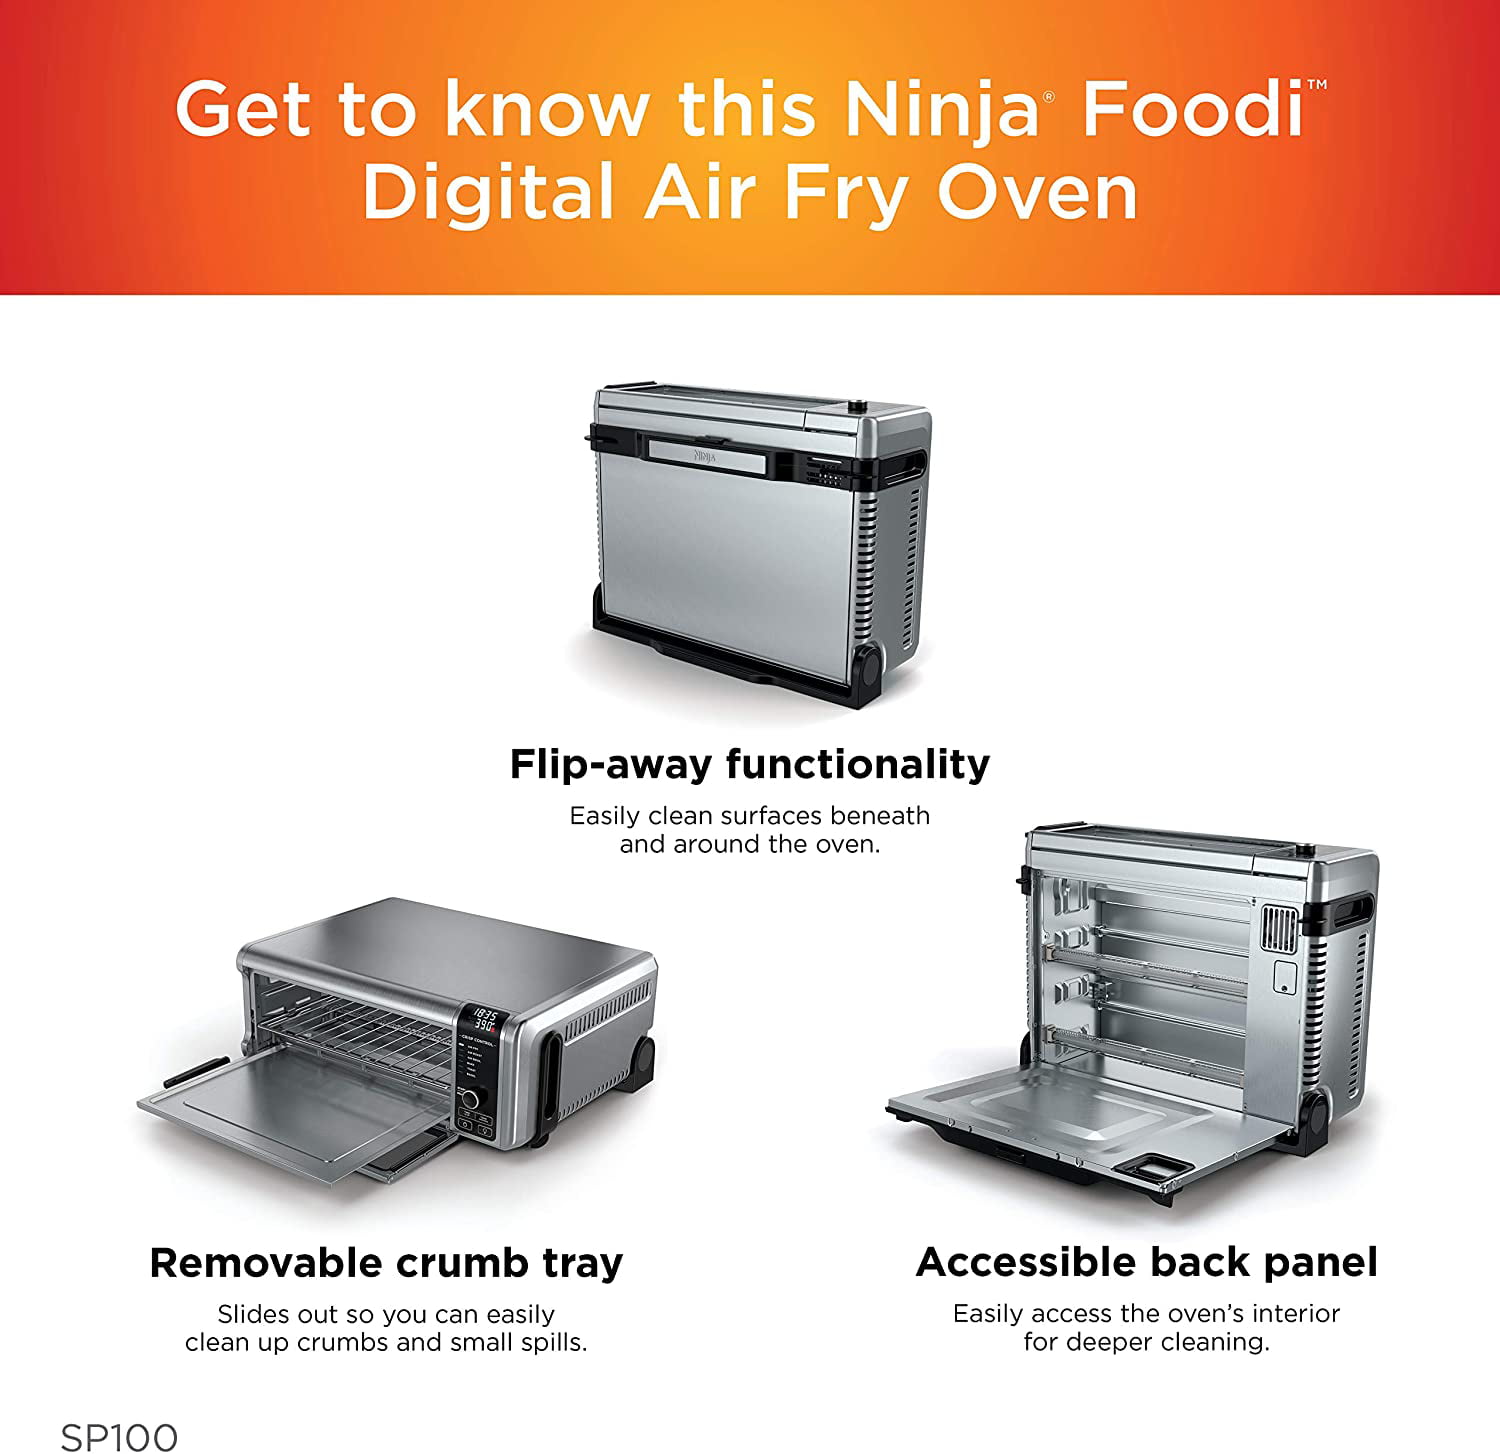 Restored Ninja DT251 Foodi 10-in-1 Smart XL Air Fry Oven, Bake, Broil,  Toast, Roast, Digital Toaster (Silver) - (Refurbished) 